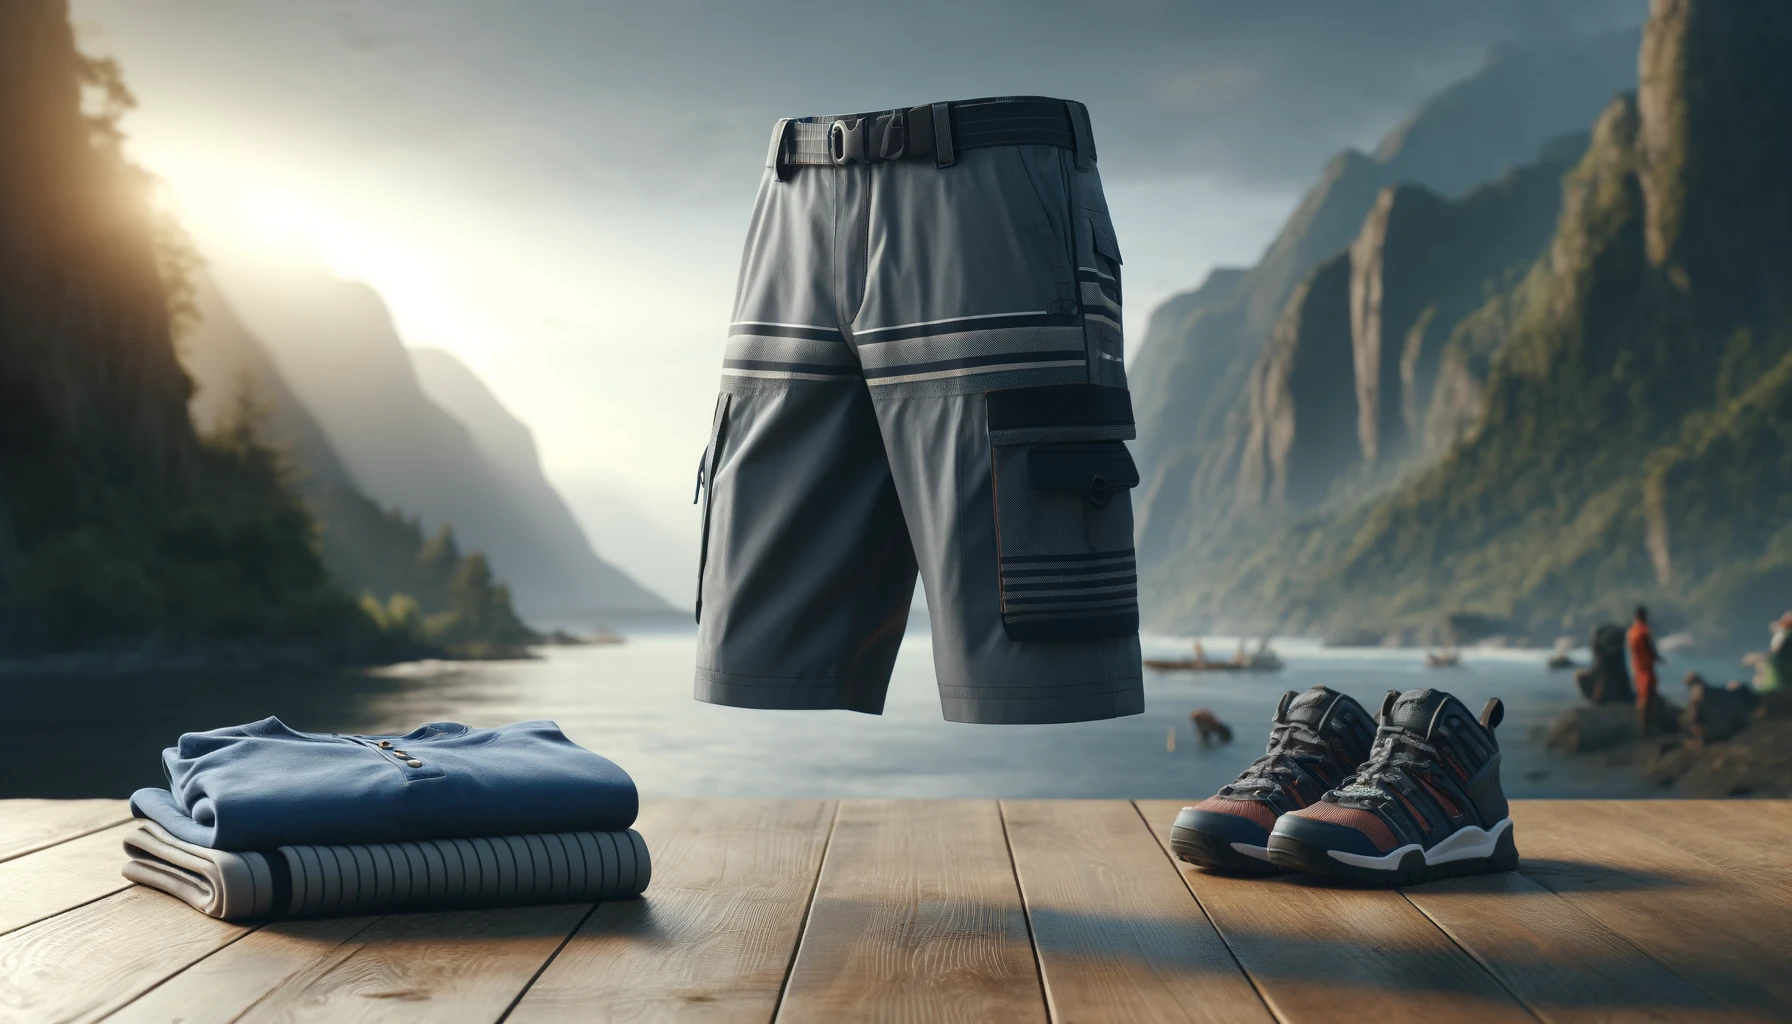 Чоловічі шорти для активного відпочинку: що носити для комфорту та зручності